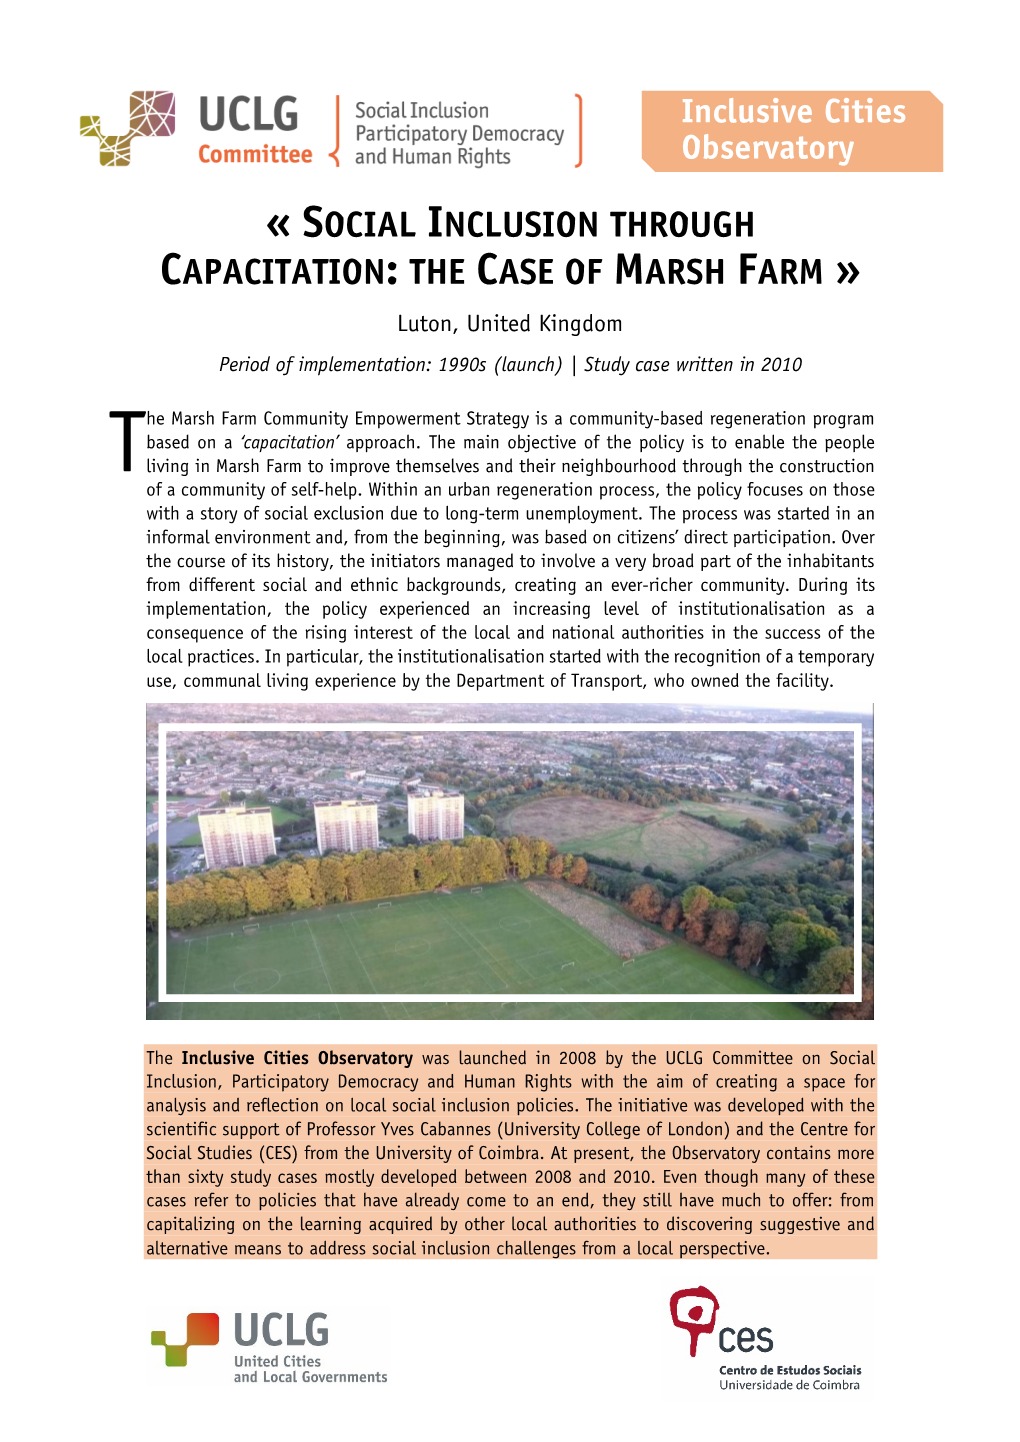 Luton, England Social Inclusion Through Capacitation: the Case of Marsh Farm